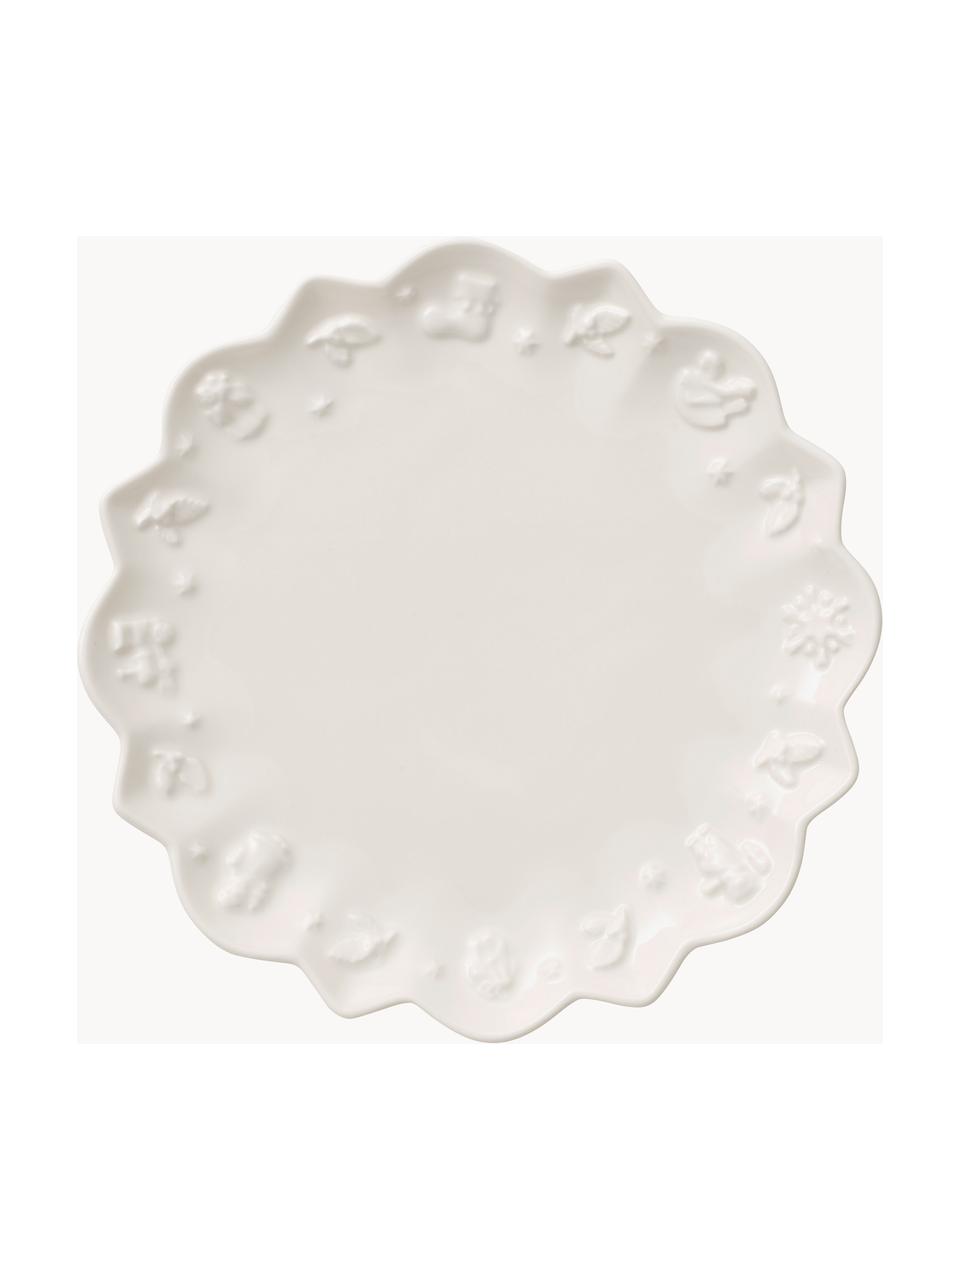 Porzellan-Untertasse Toy's Delight, 6 Stück, Premium Porzellan, Weiß, Ø 19 cm